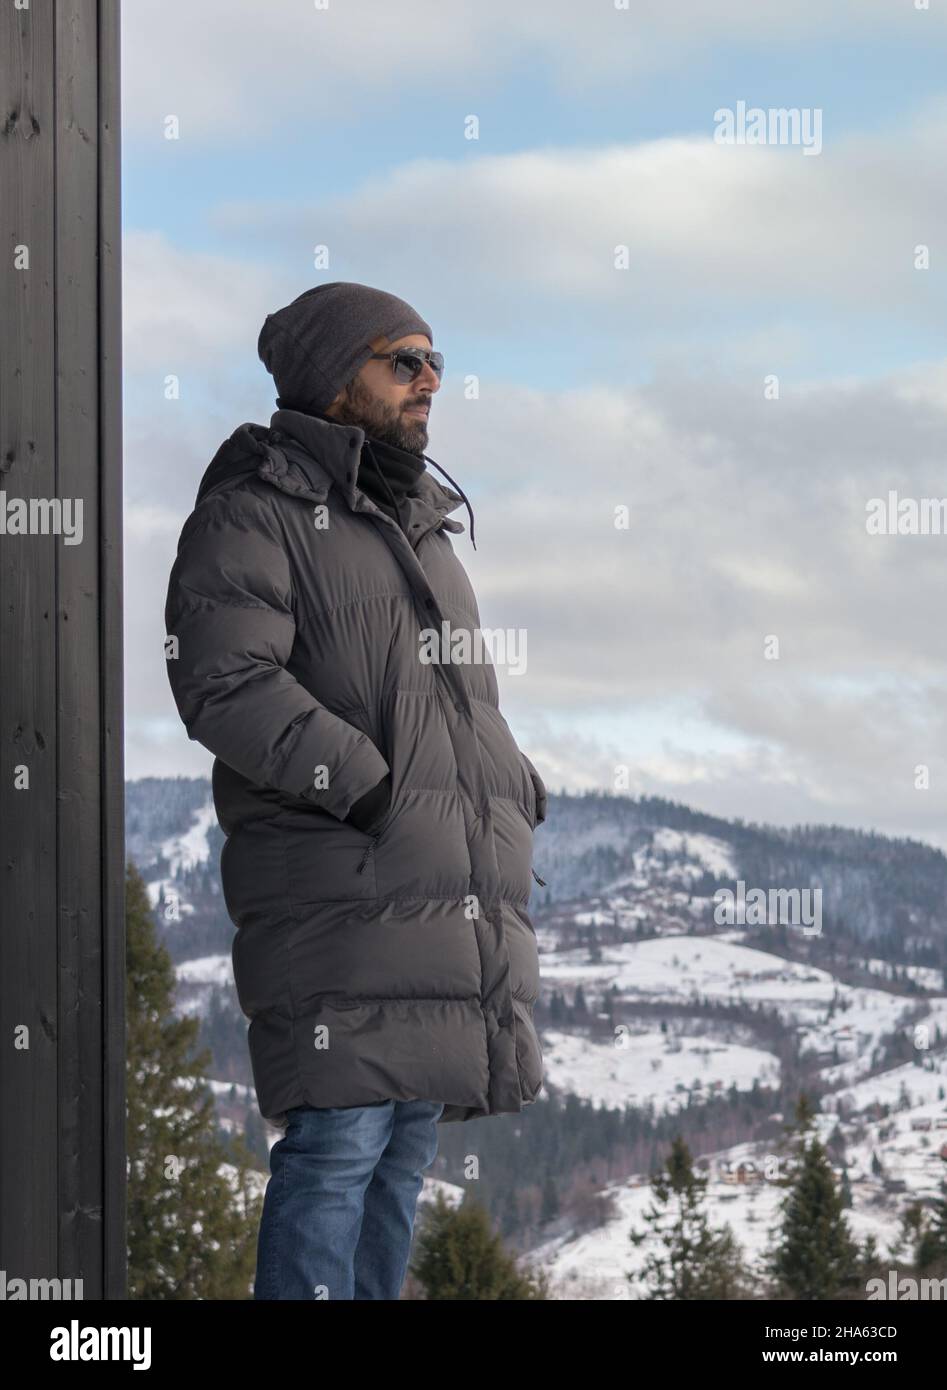 Portrait de l'homme du Moyen-Orient regardant la vue sur les montagnes enneigées Banque D'Images